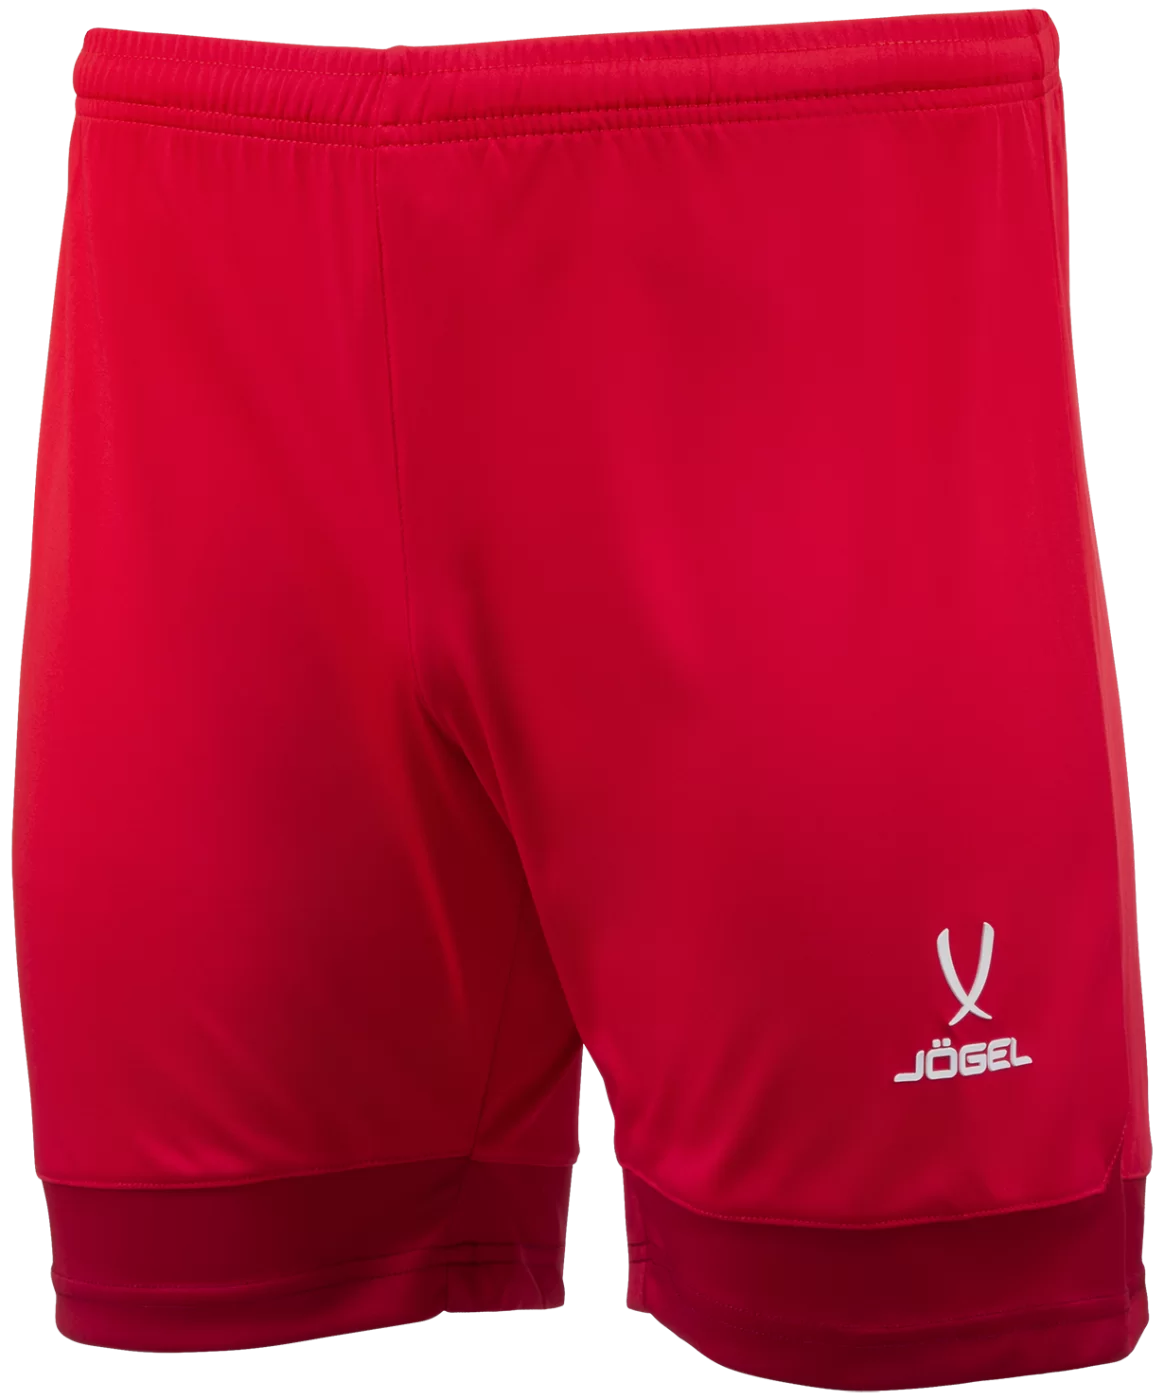 Реальное фото Шорты игровые DIVISION PerFormDRY Union Shorts, красный/ темно-красный/белый, детский Jögel от магазина Спортев